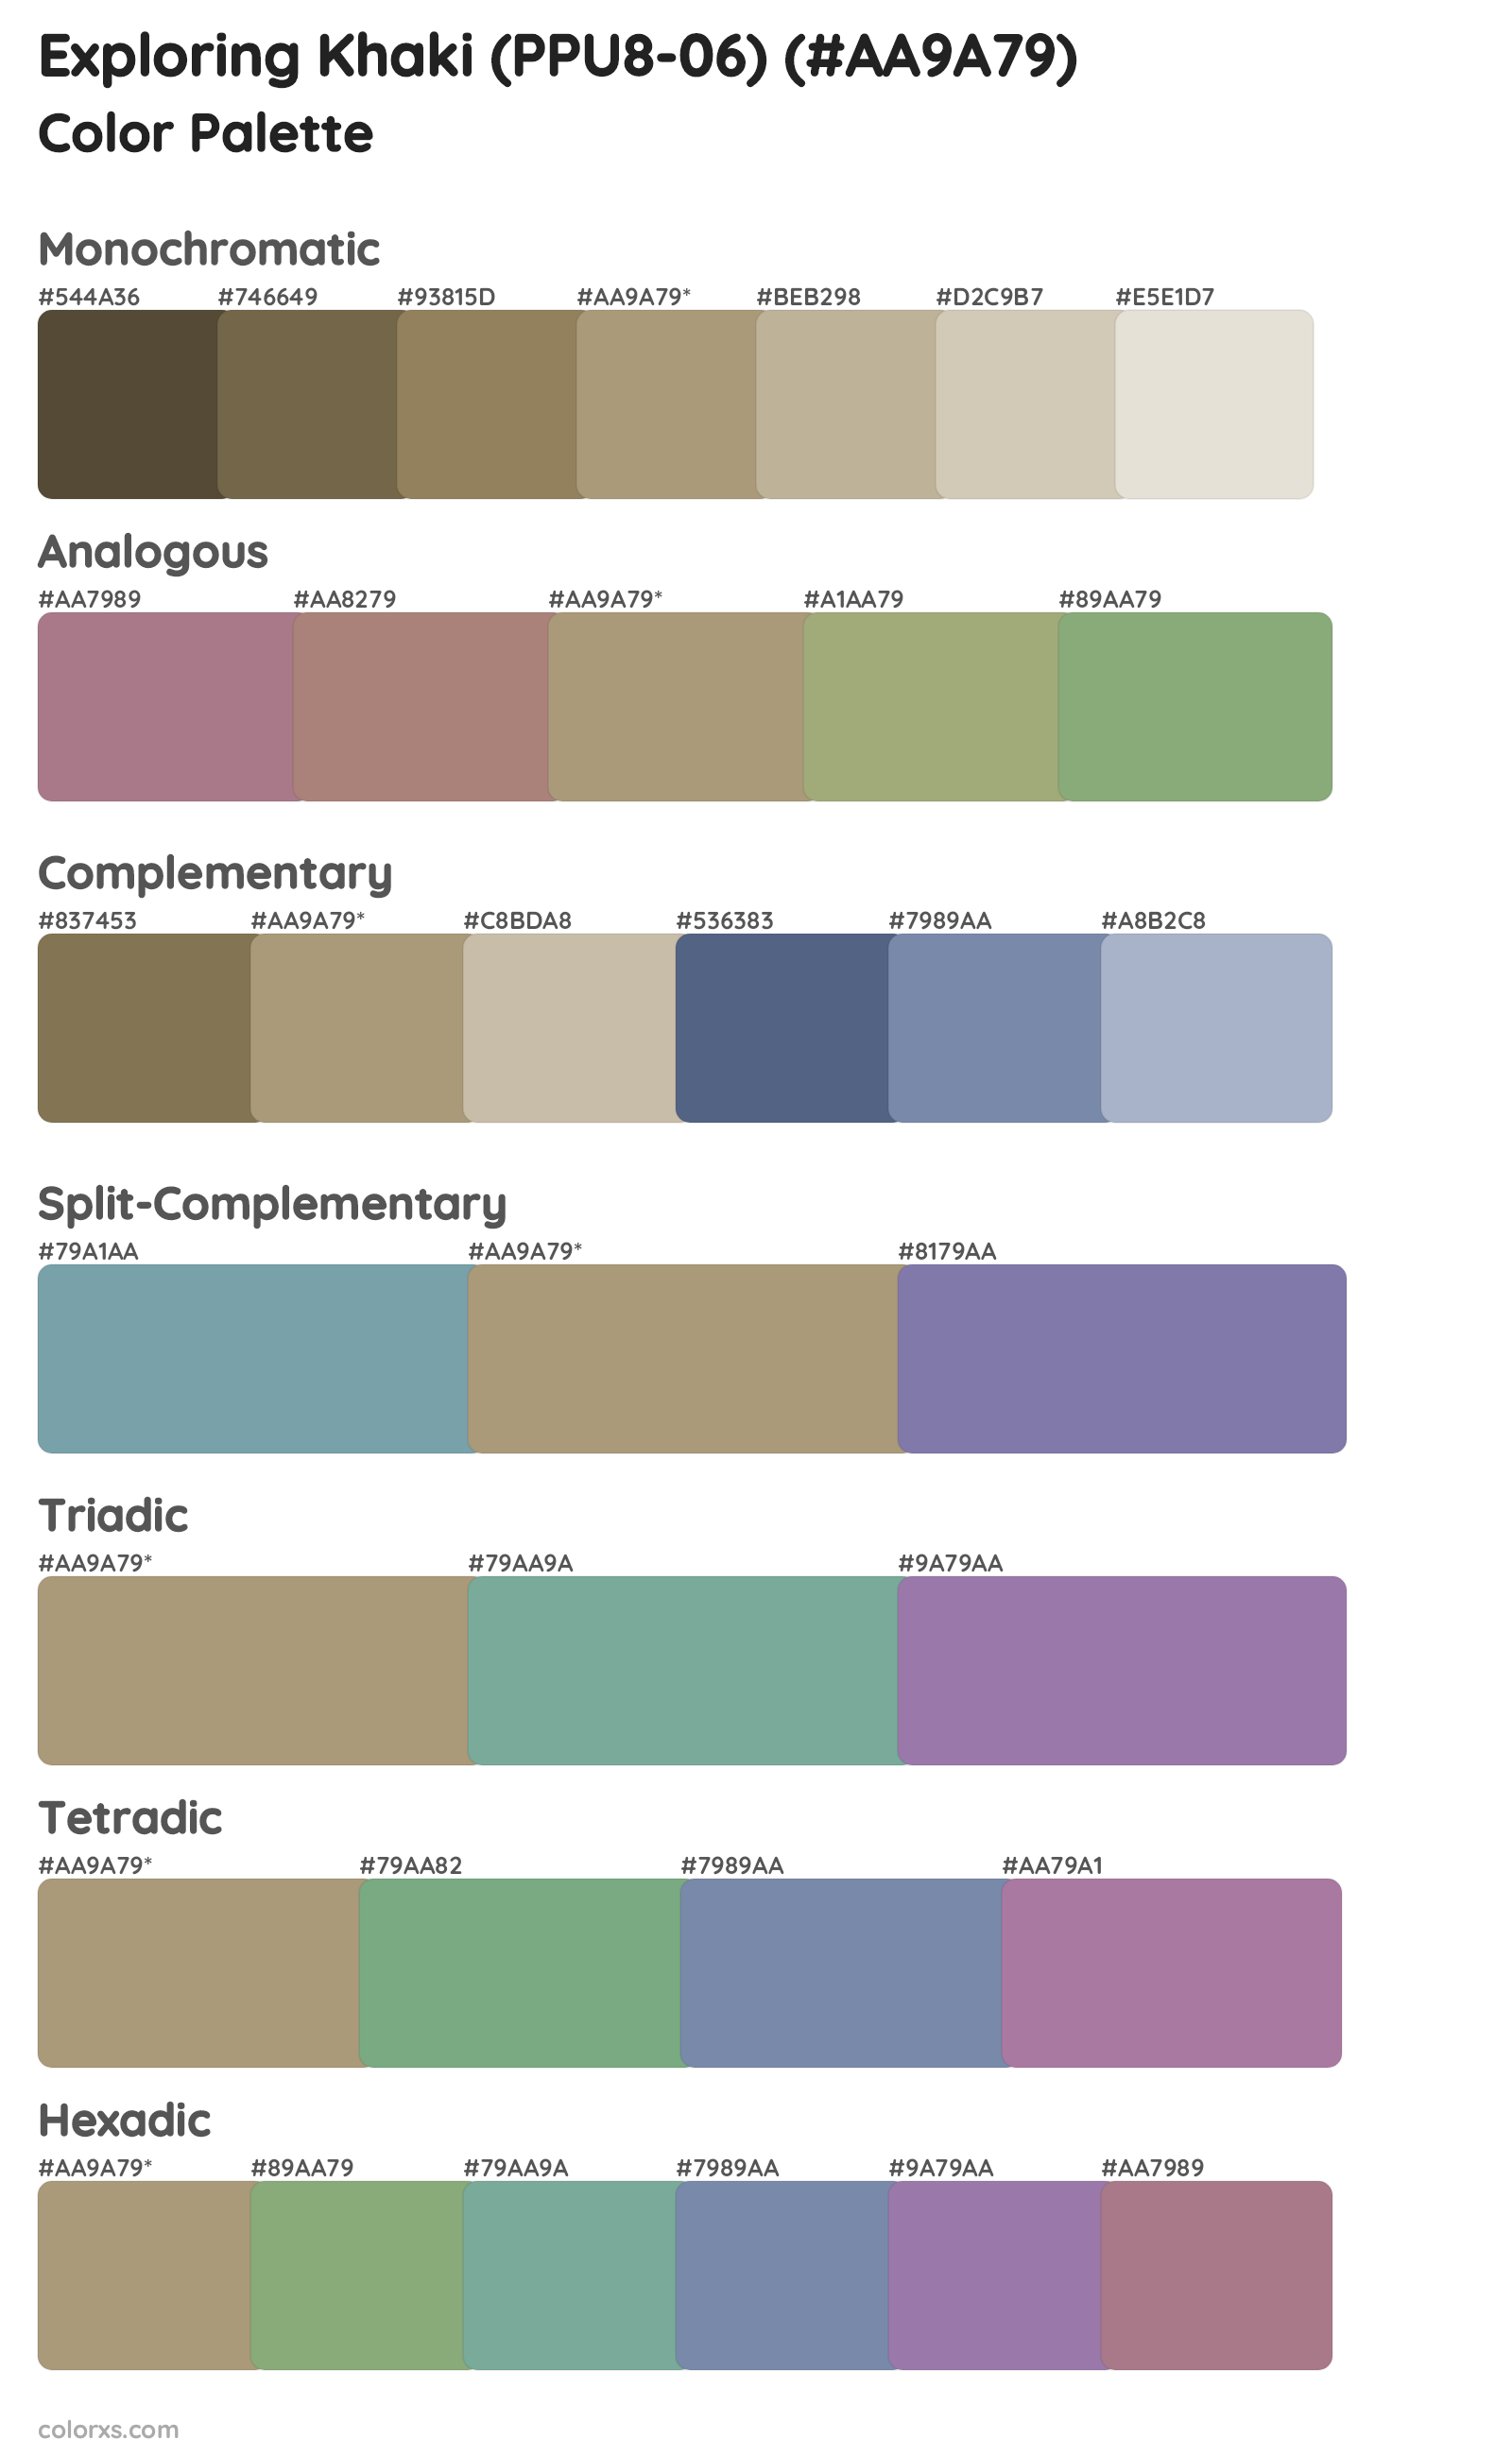 Exploring Khaki (PPU8-06) Color Scheme Palettes